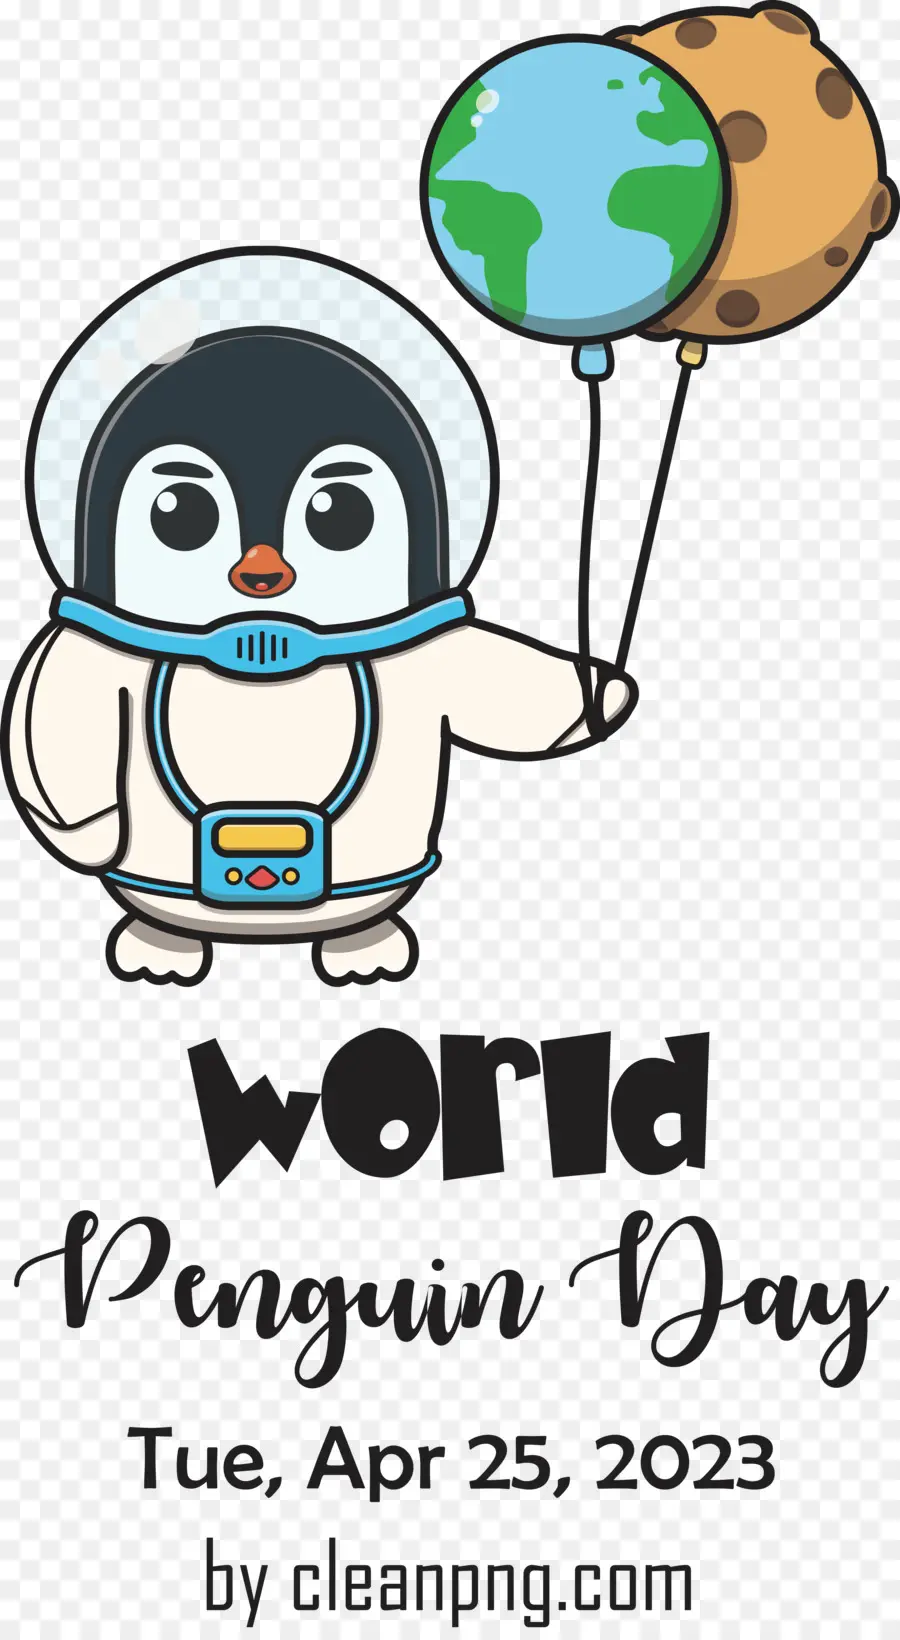 Dunia Penguin Hari，Hari Penguin PNG